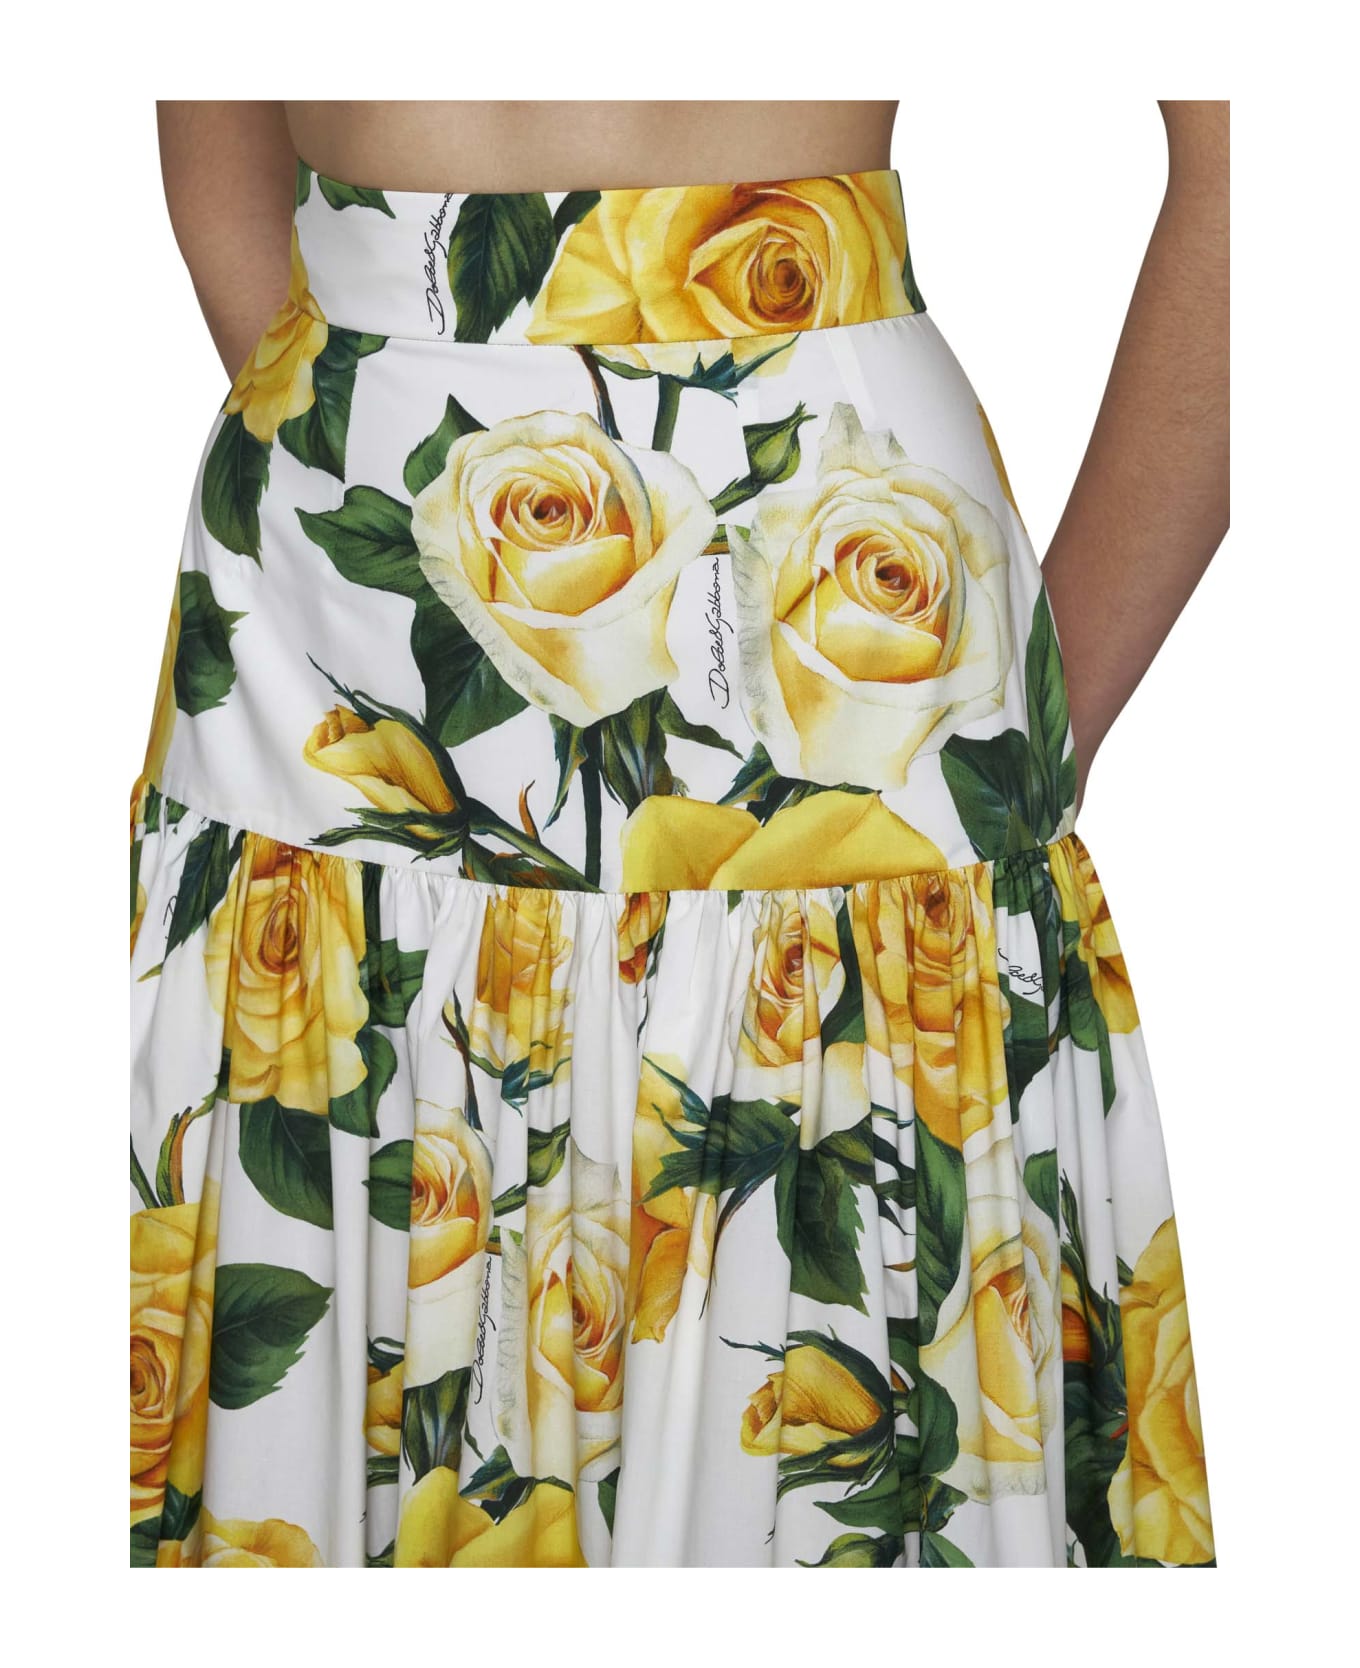 Dolce & Gabbana Pleated Midi Skirt - Rose gialle f.b.nat